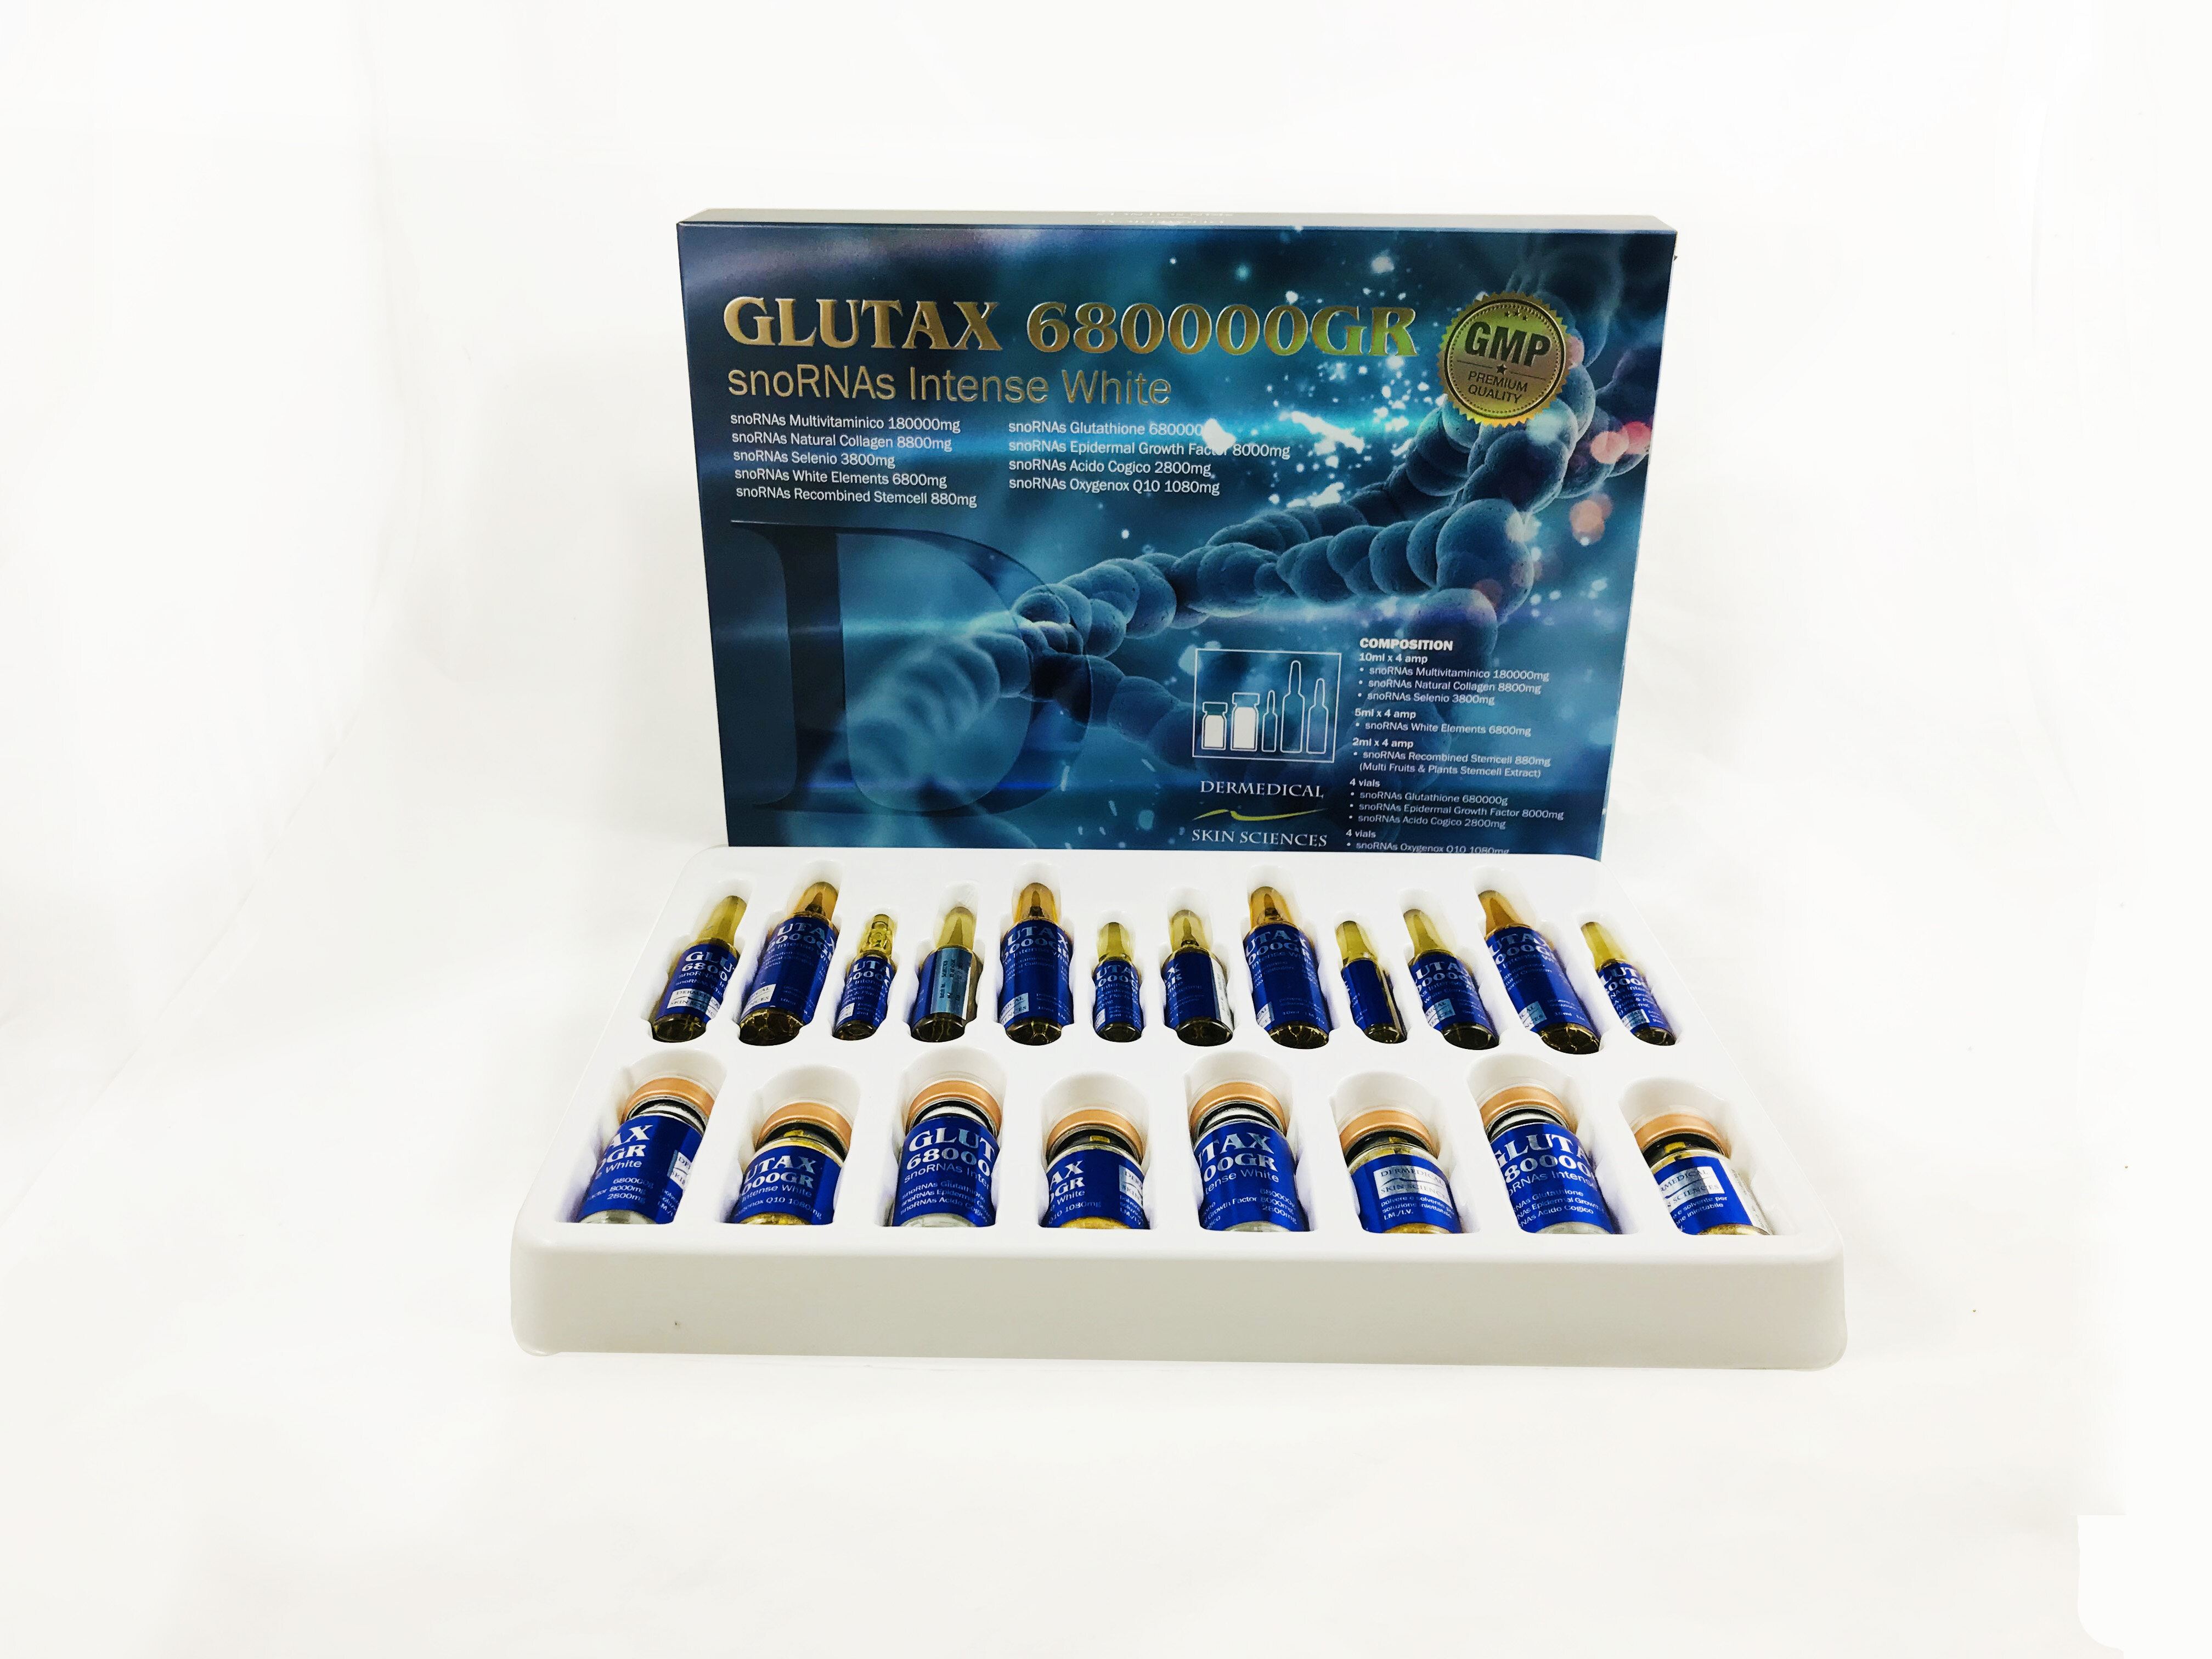 Glutax 680000GR SnoRNAs Intense White Glutathione Skin Whitening Injection reviews